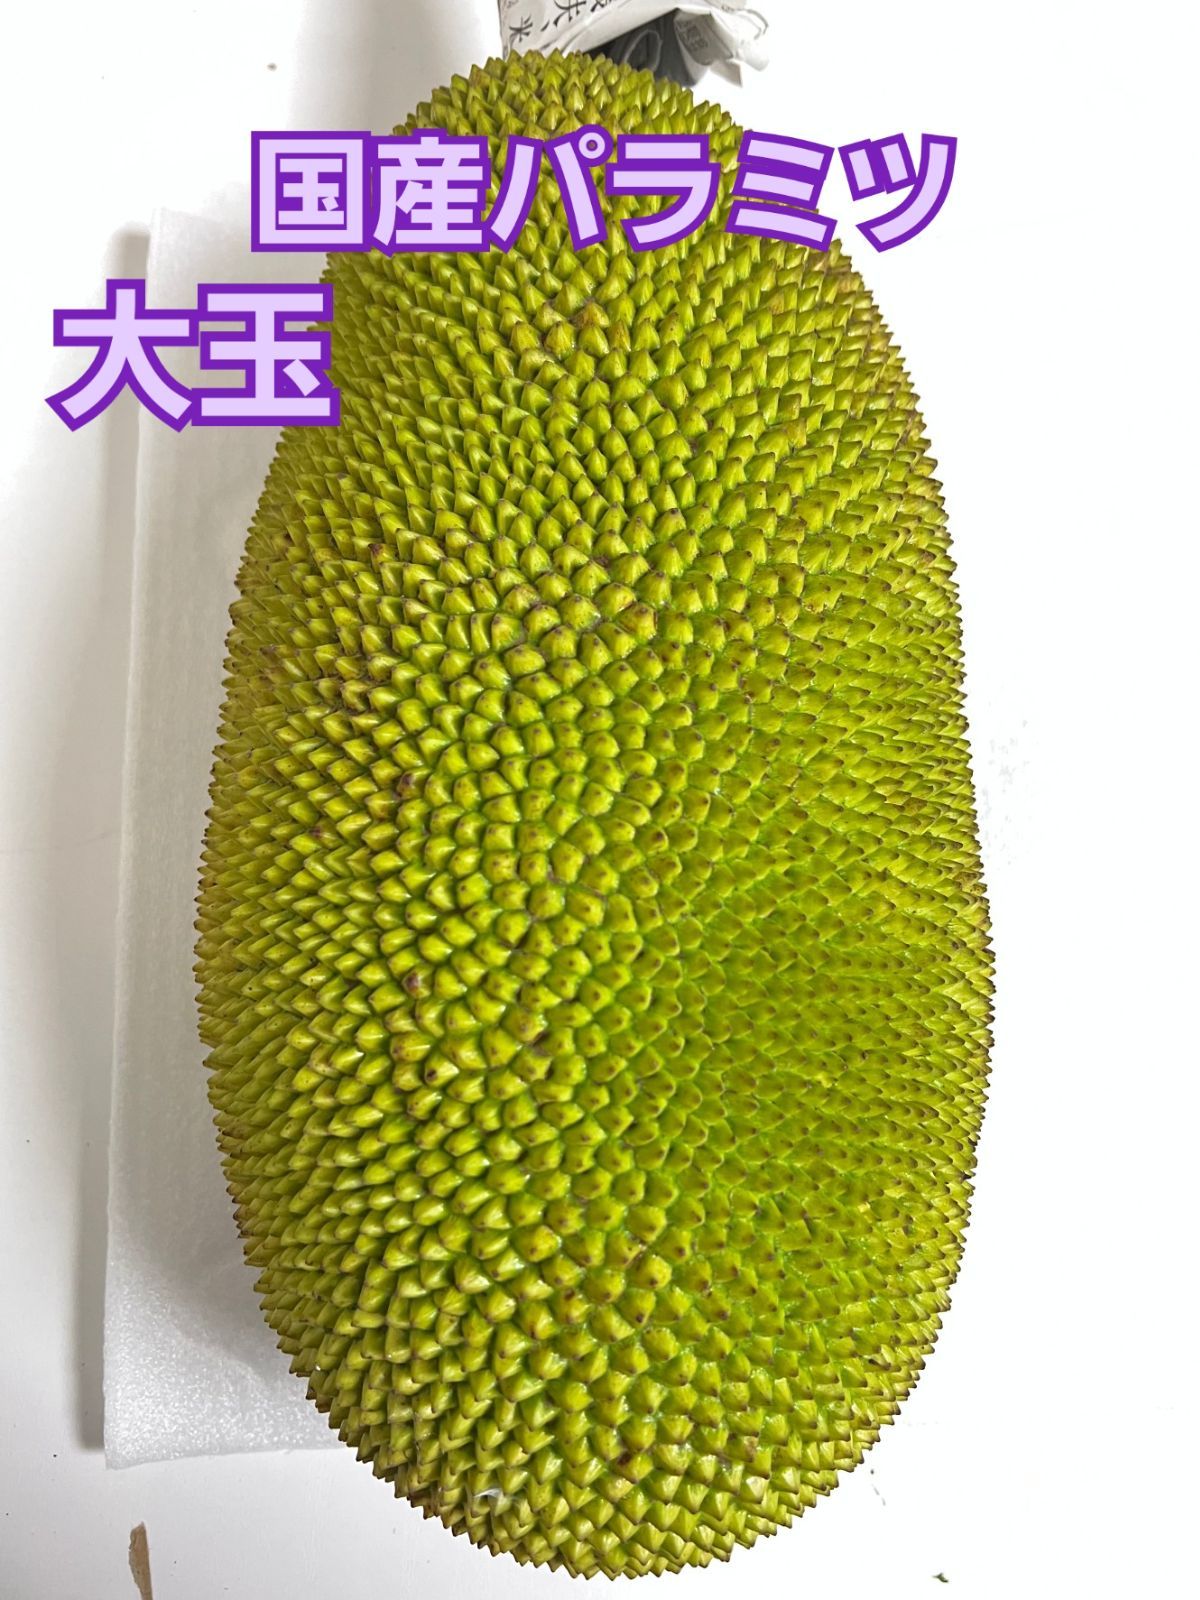 石垣島産 パラミツ ジャックフルーツ 5kg - 果物